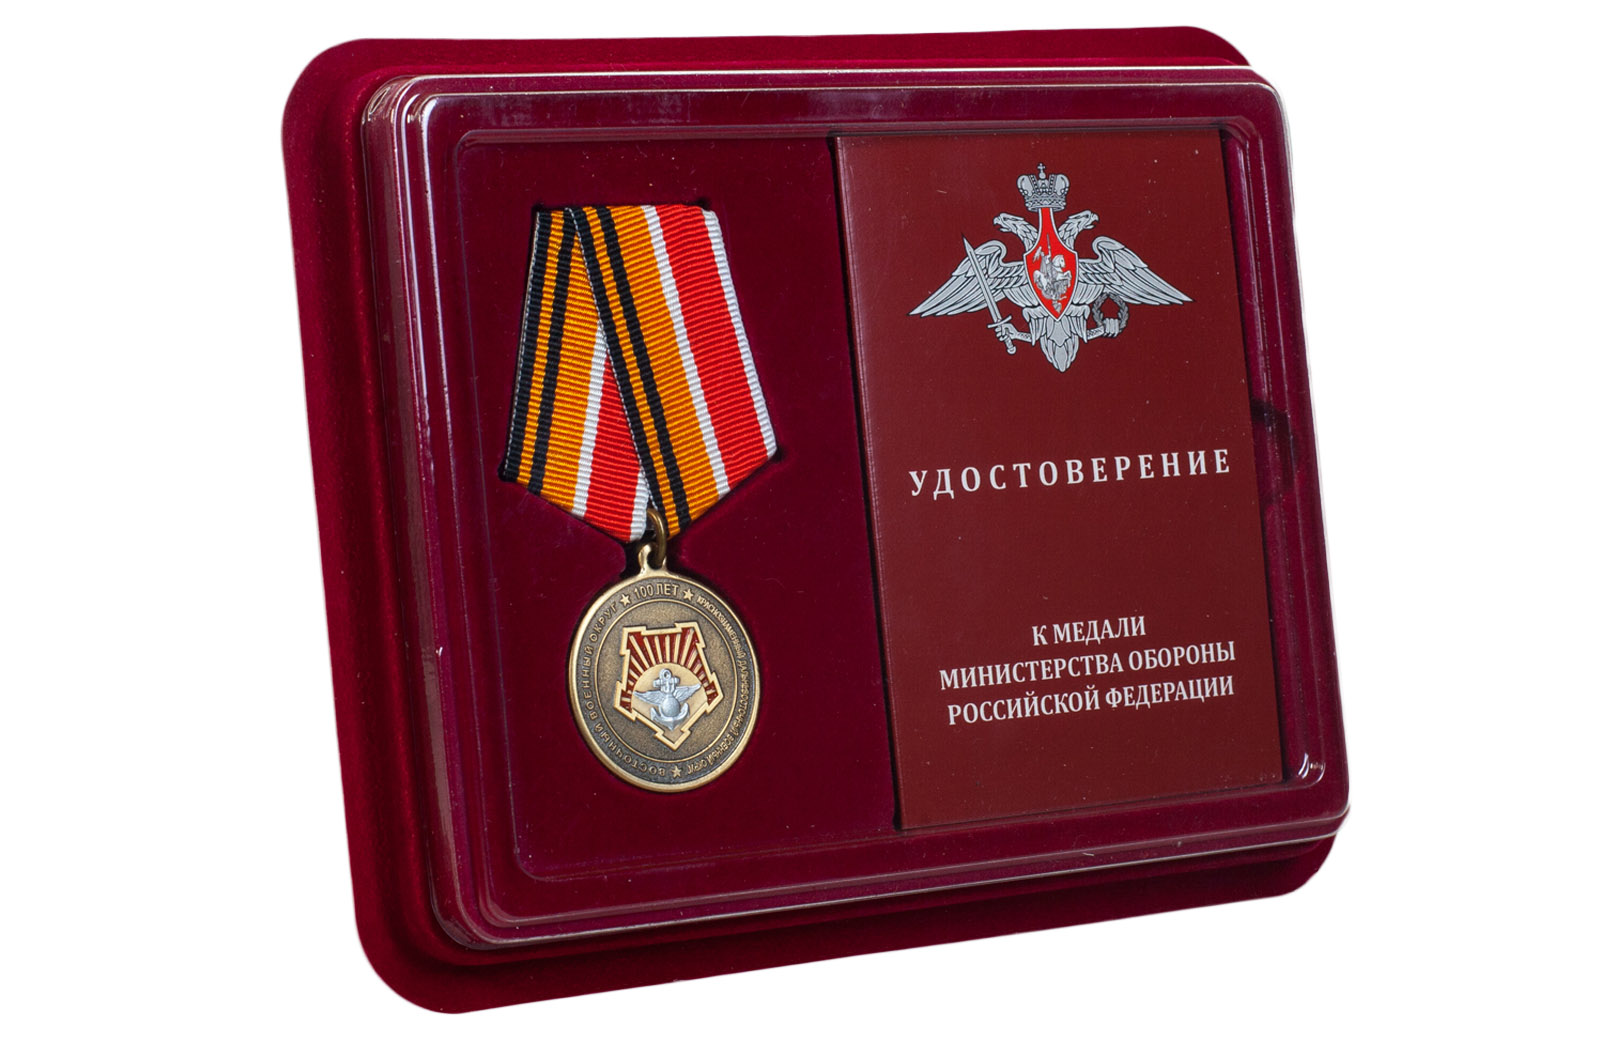 Купить юбилейную медаль 100 лет Восточному военному округу в подарок